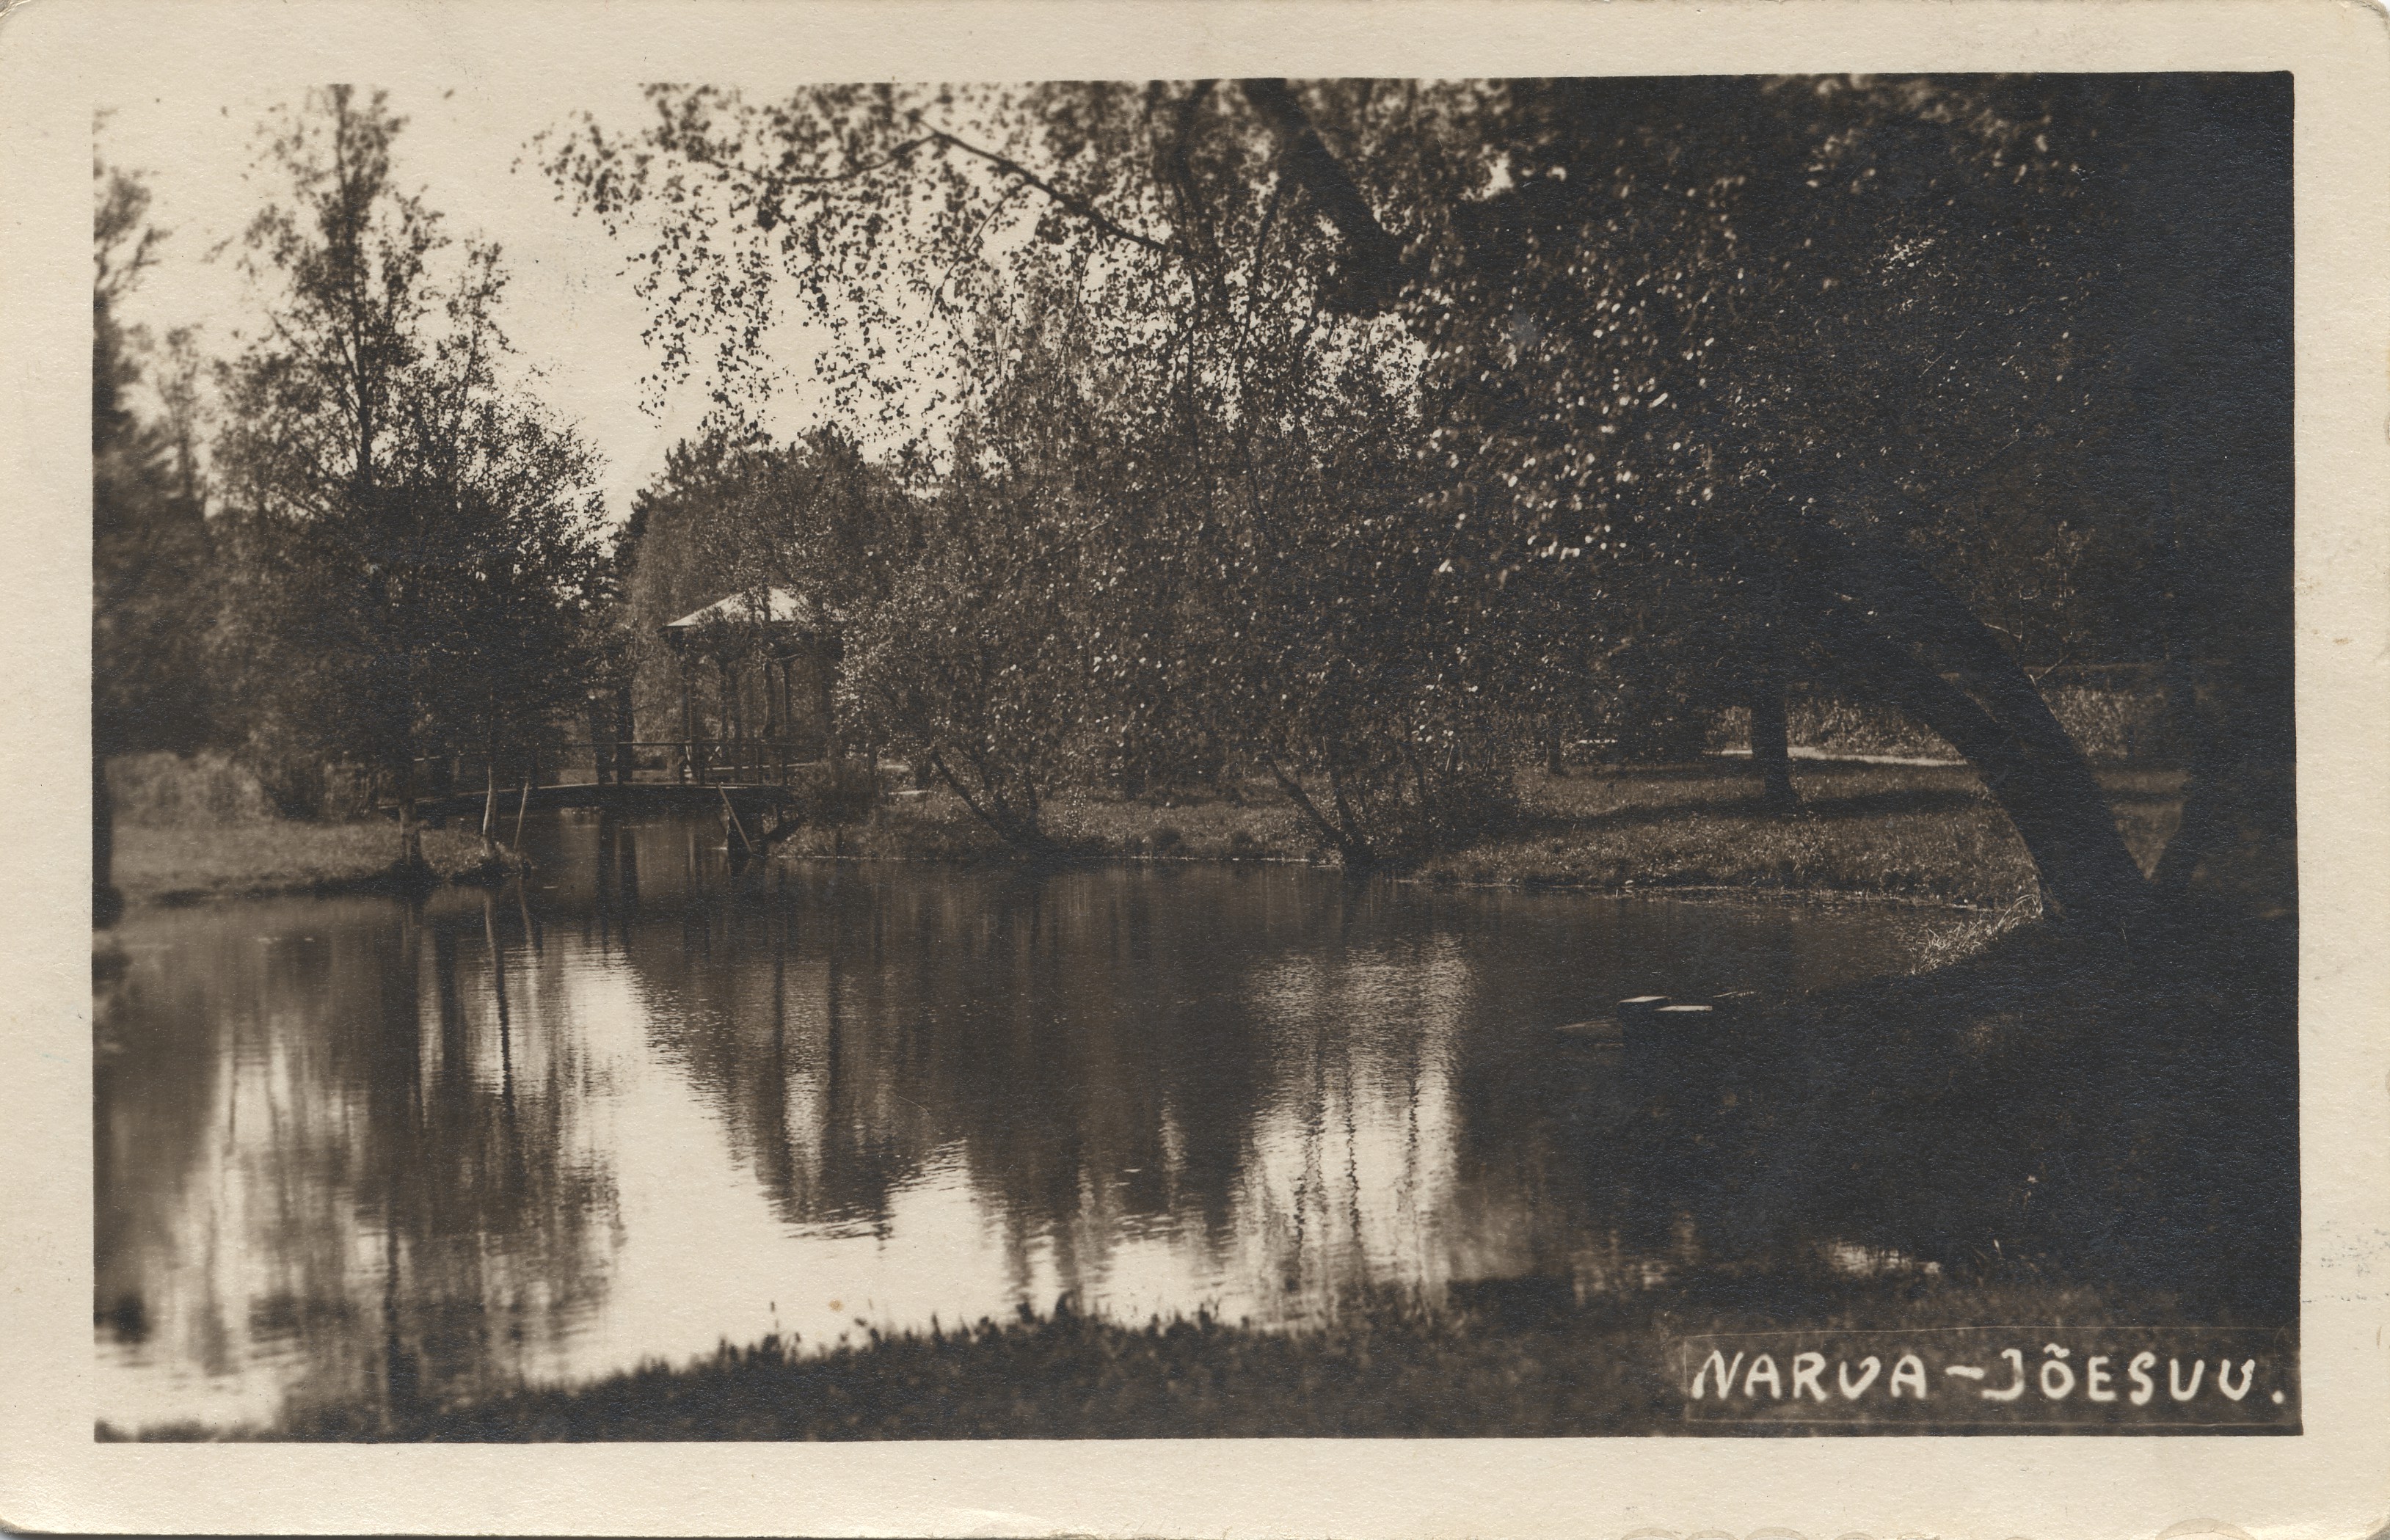 Narva-jõesuu